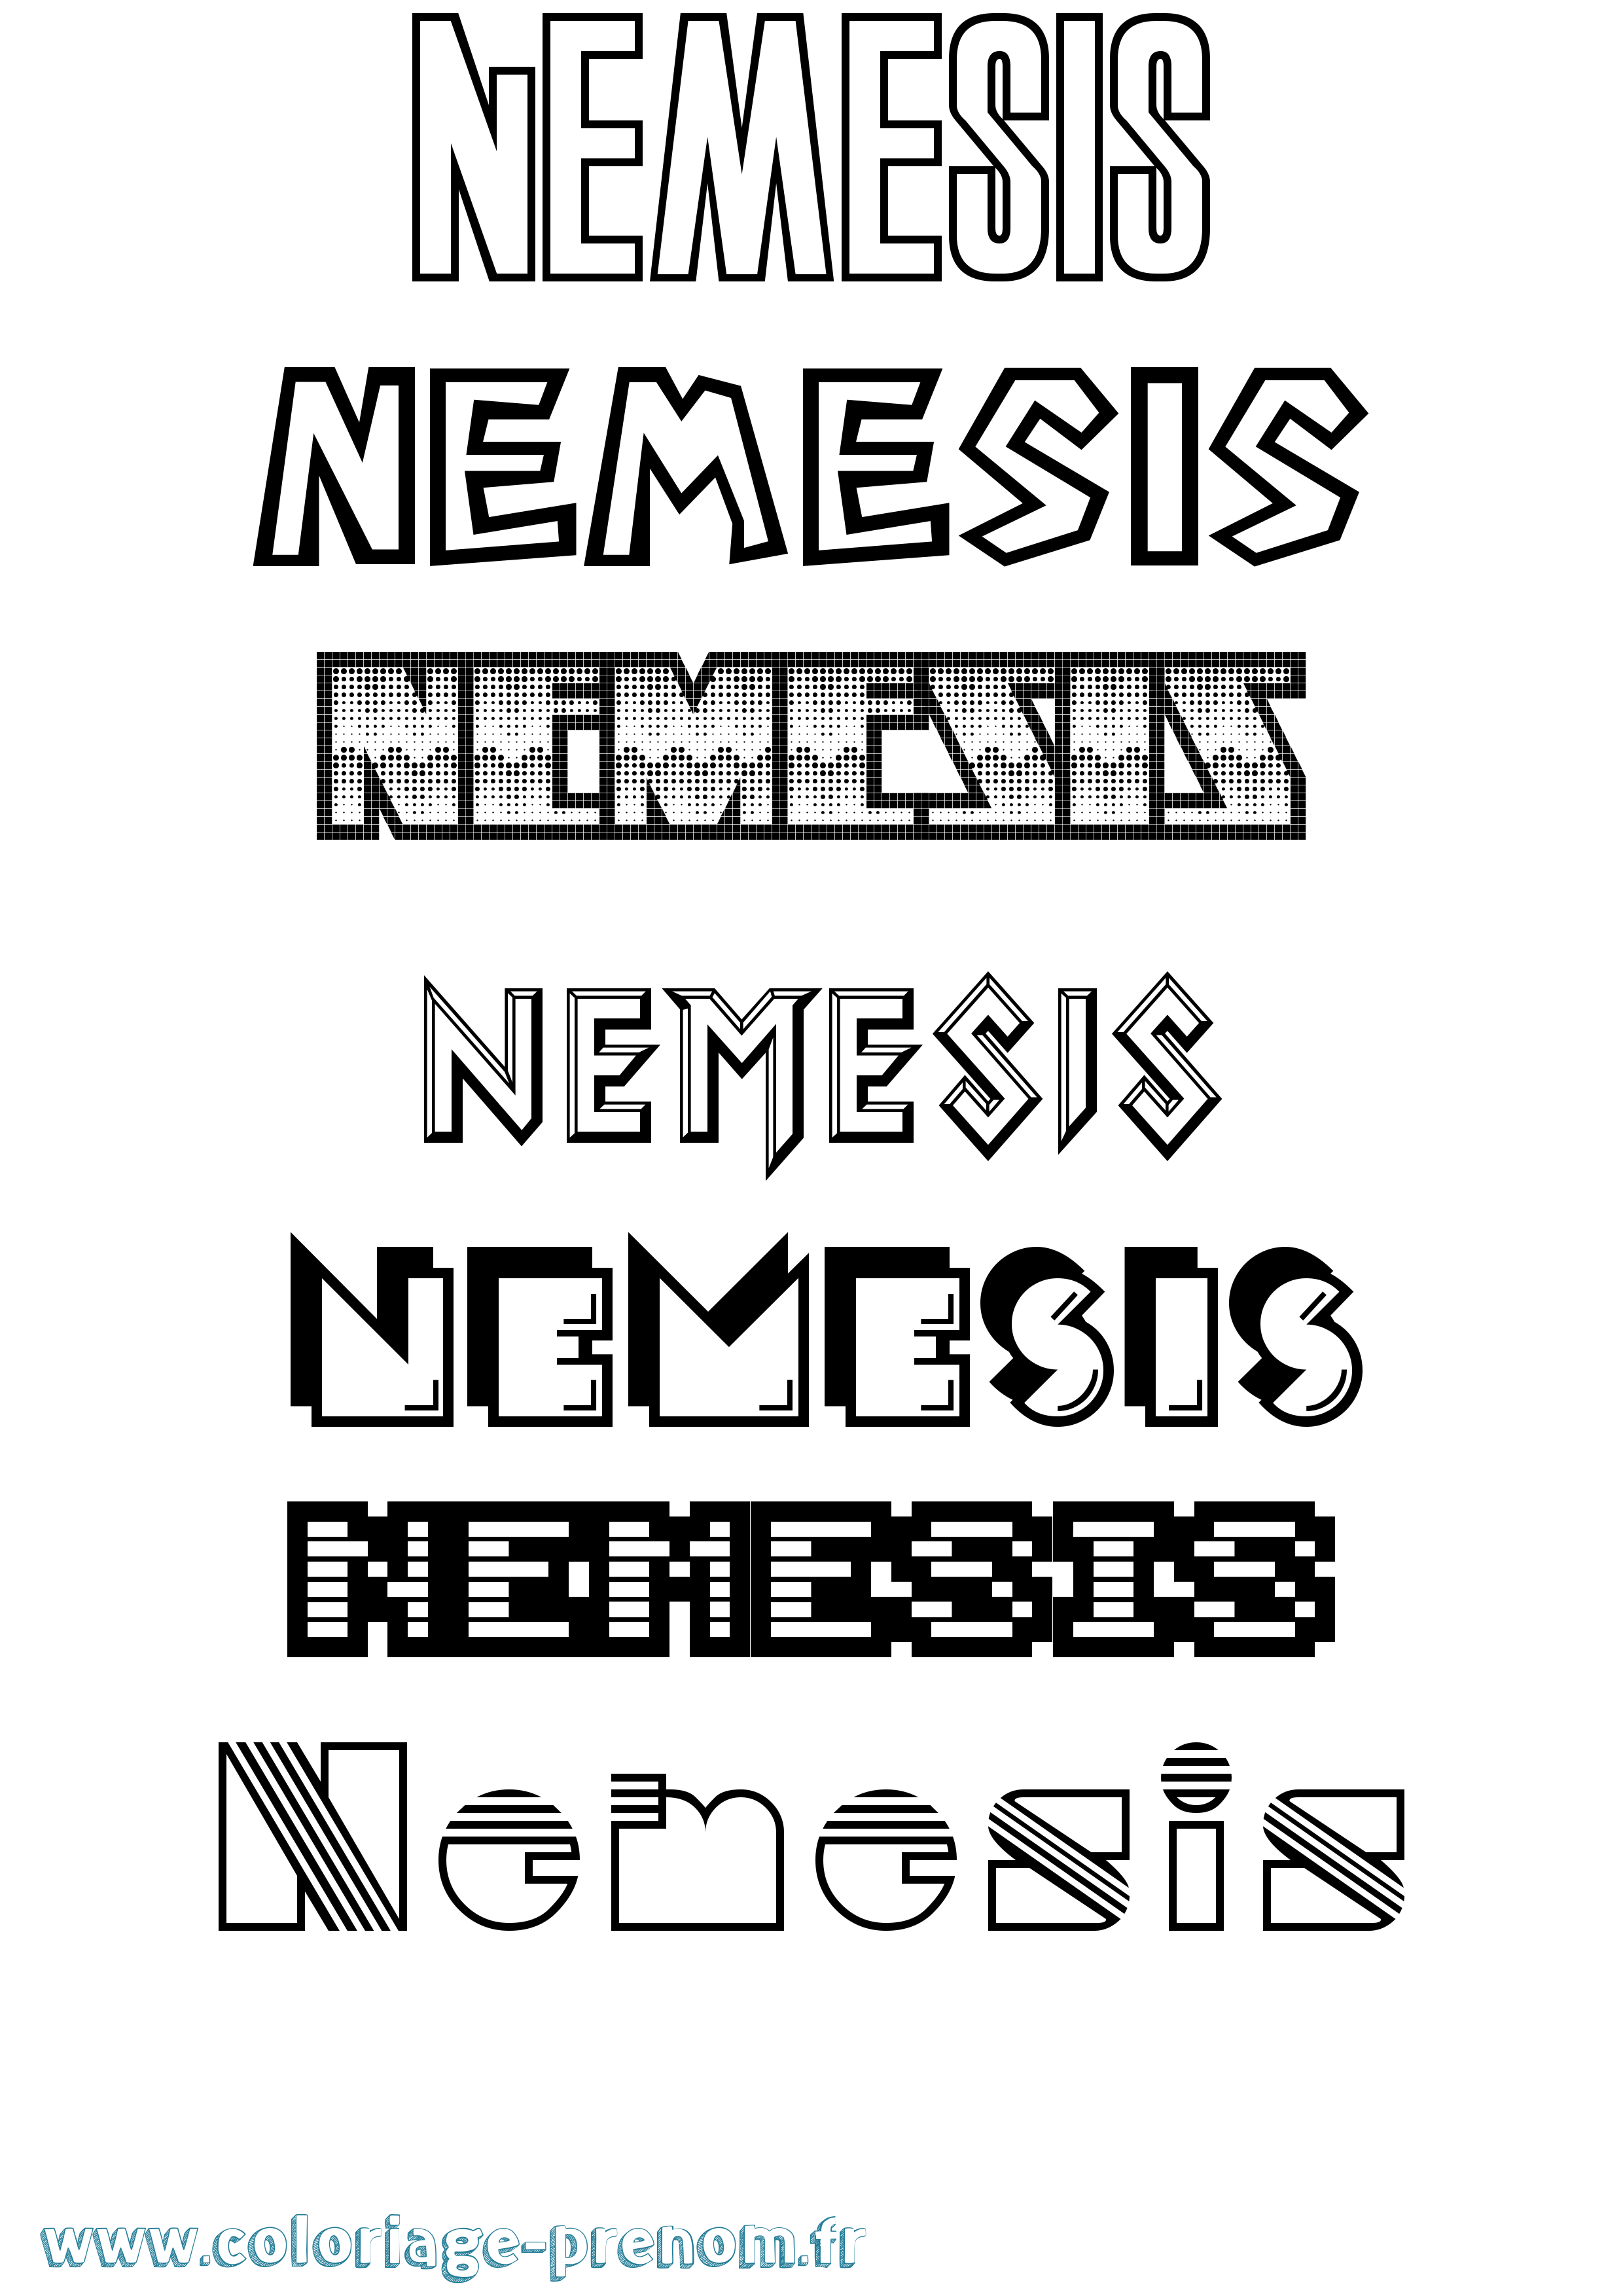 Coloriage prénom Nemesis Jeux Vidéos